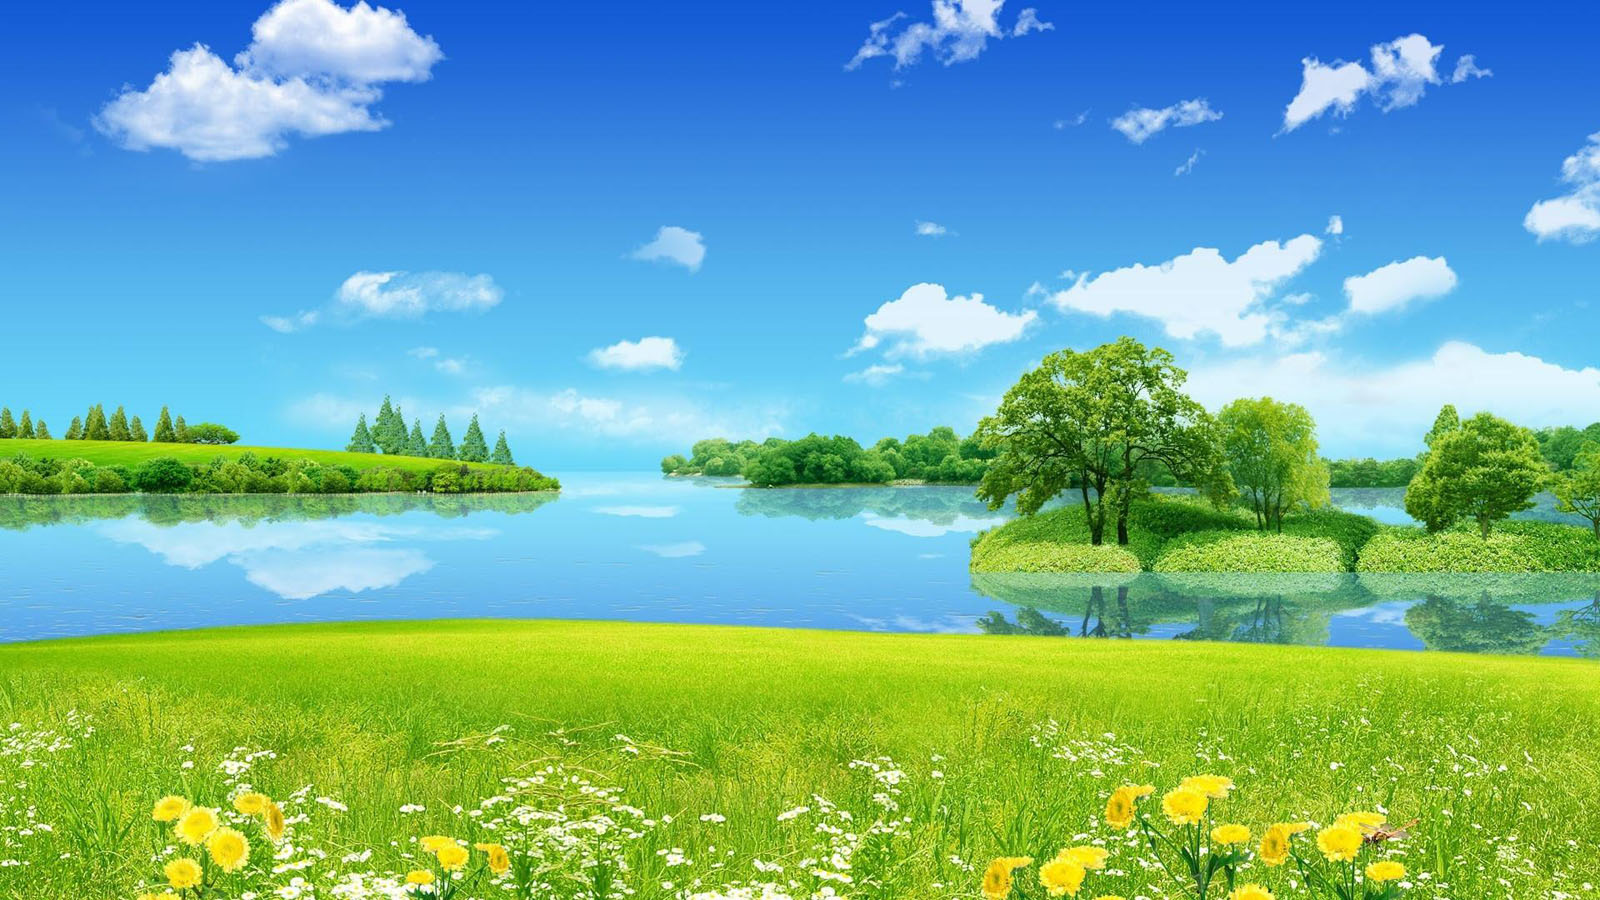 Spring Landscape Background wallpaper | 1600x900 | #27387